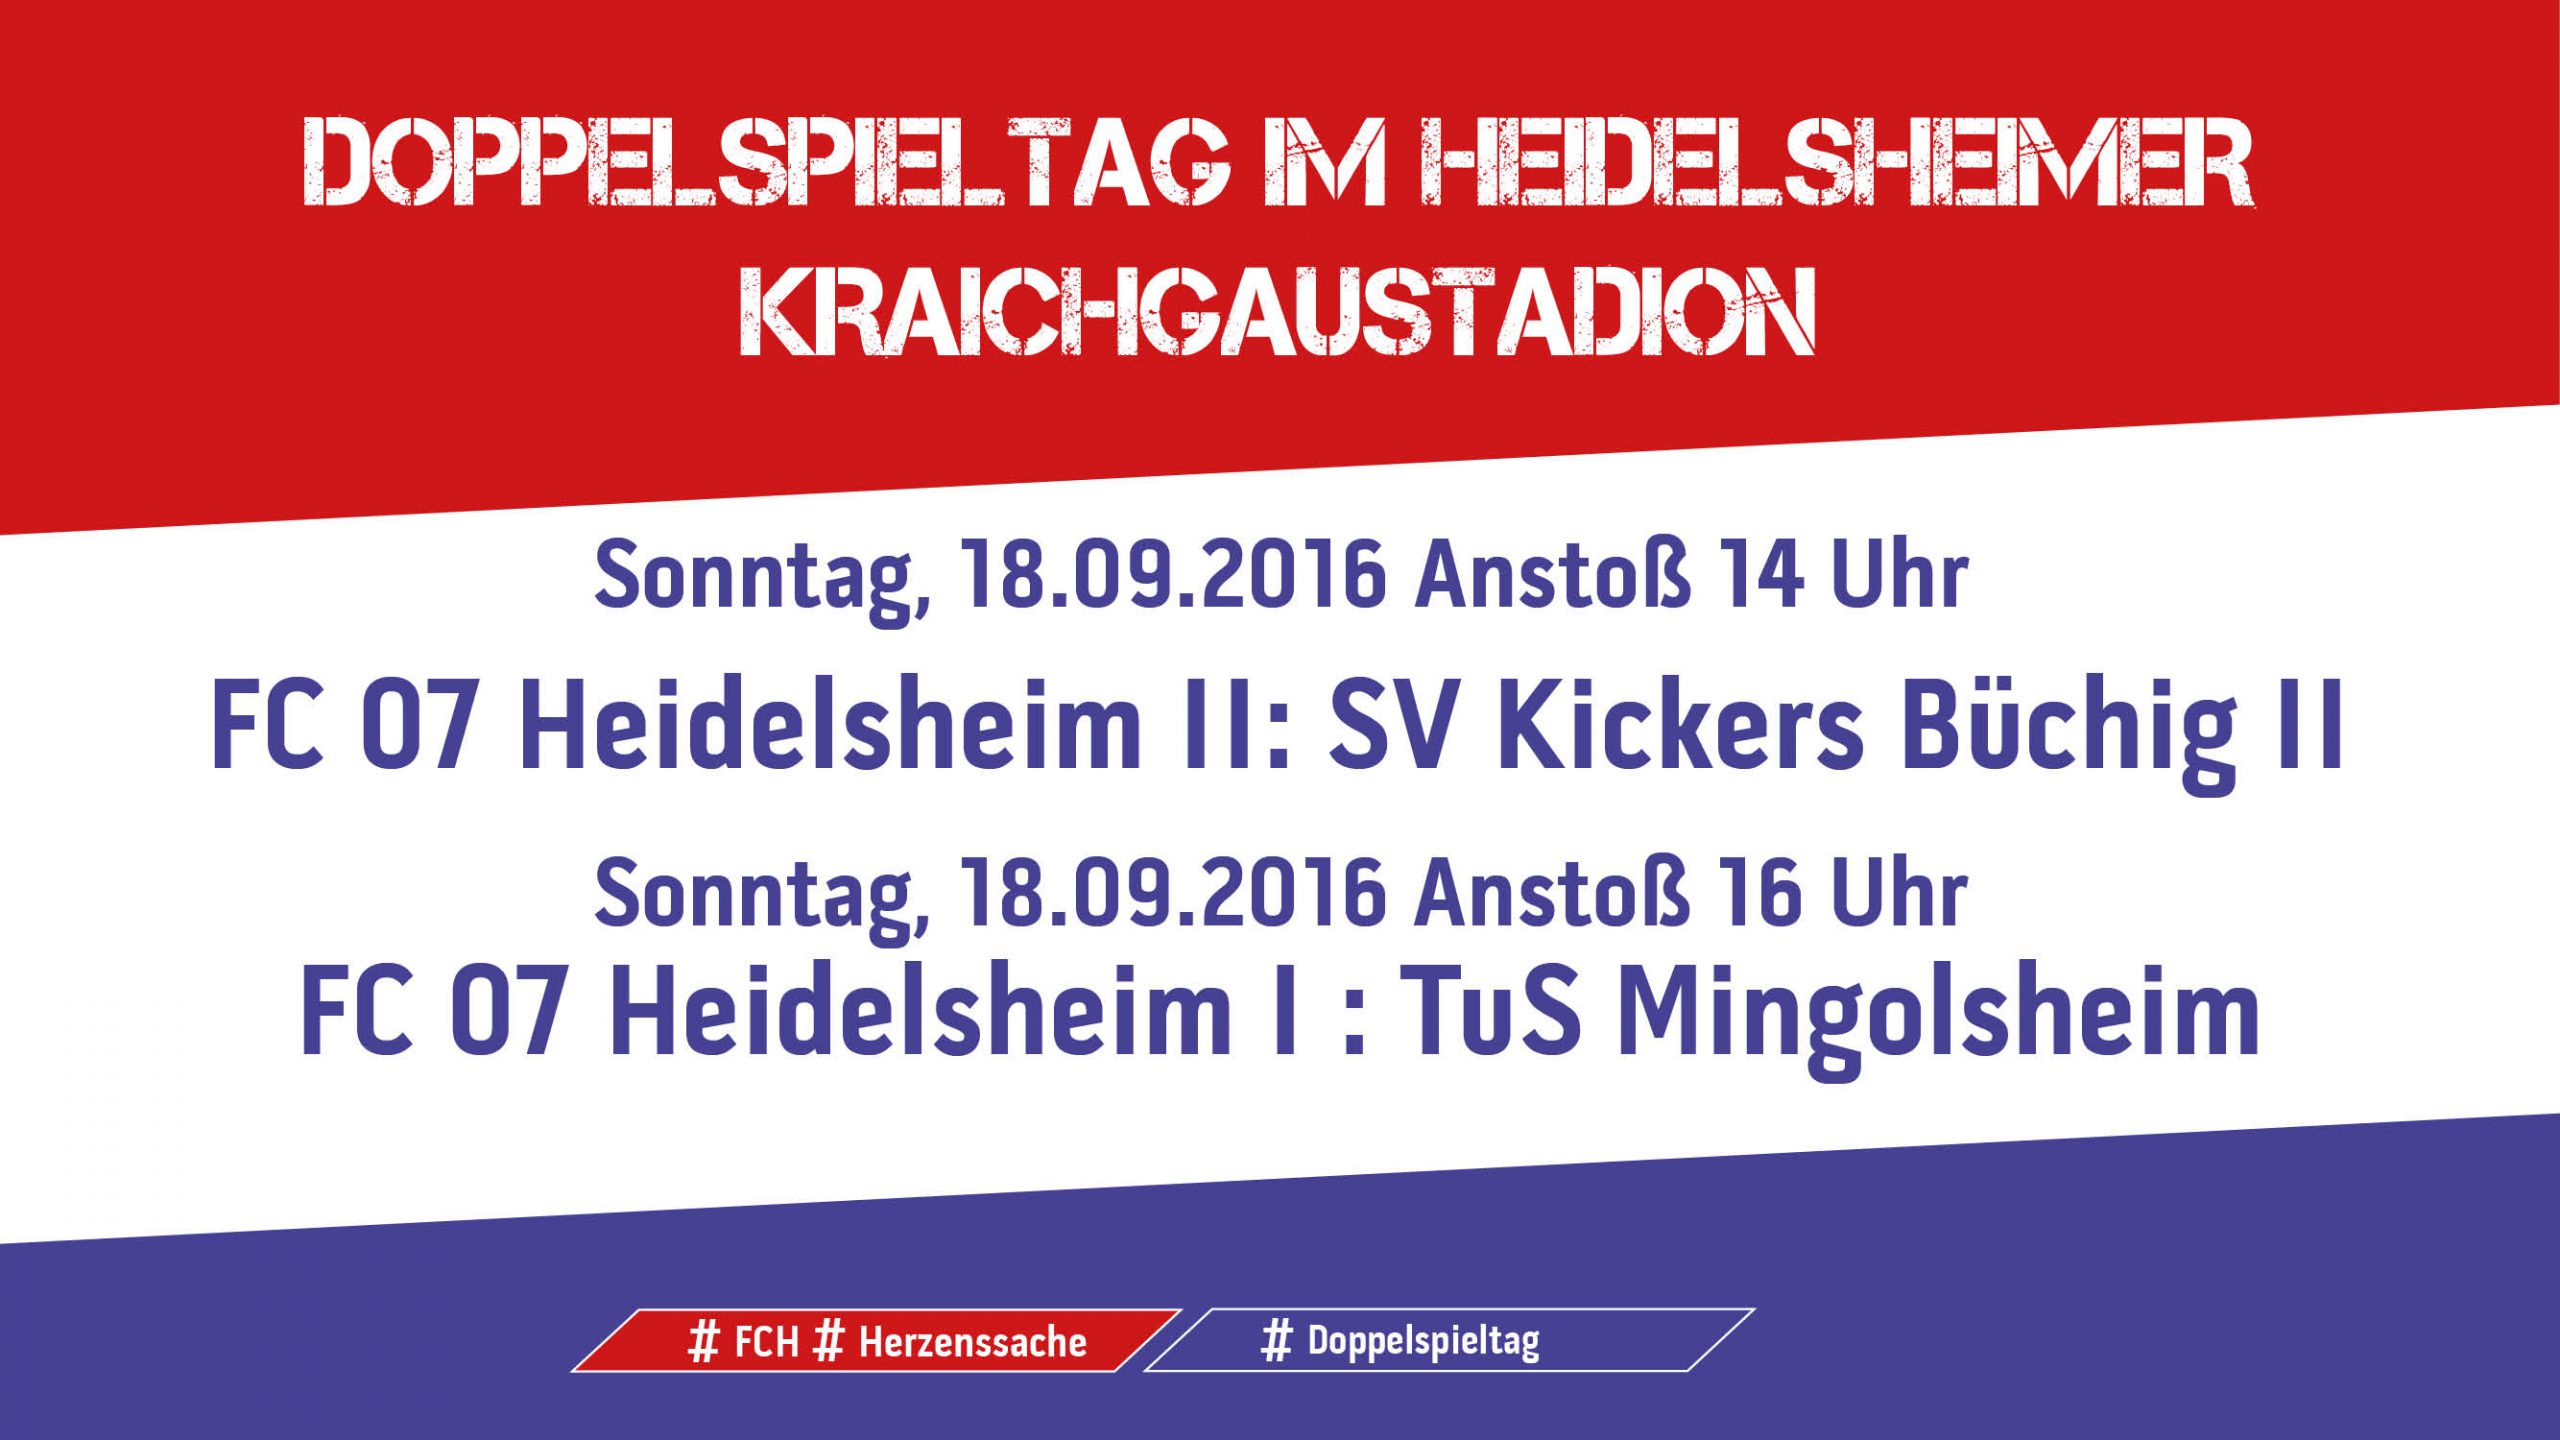 You are currently viewing Doppelspieltag im Heidelsheimer Kraichgaustadion am kommenden Sonntag, 18. September 2016